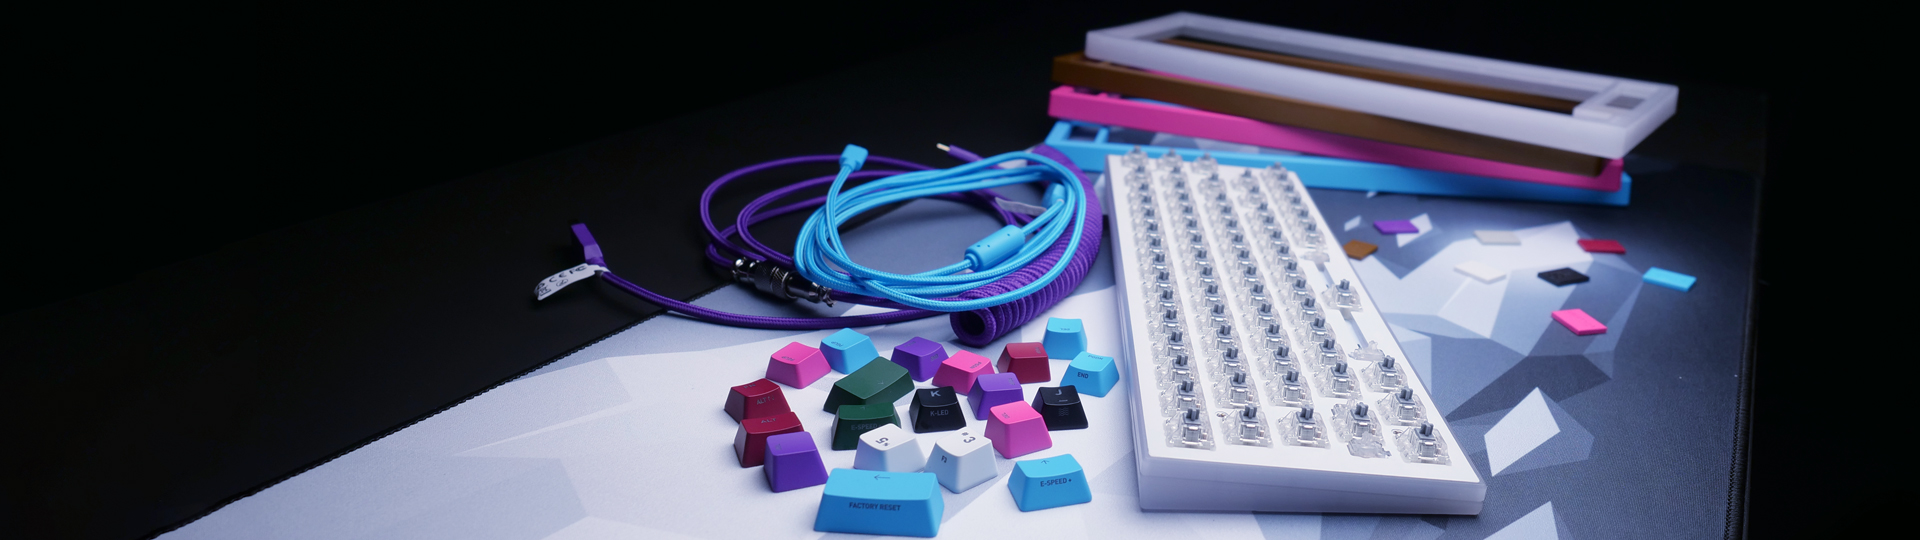 Keycaps, clavier mécanique, clavier gaming, touches personnalisées